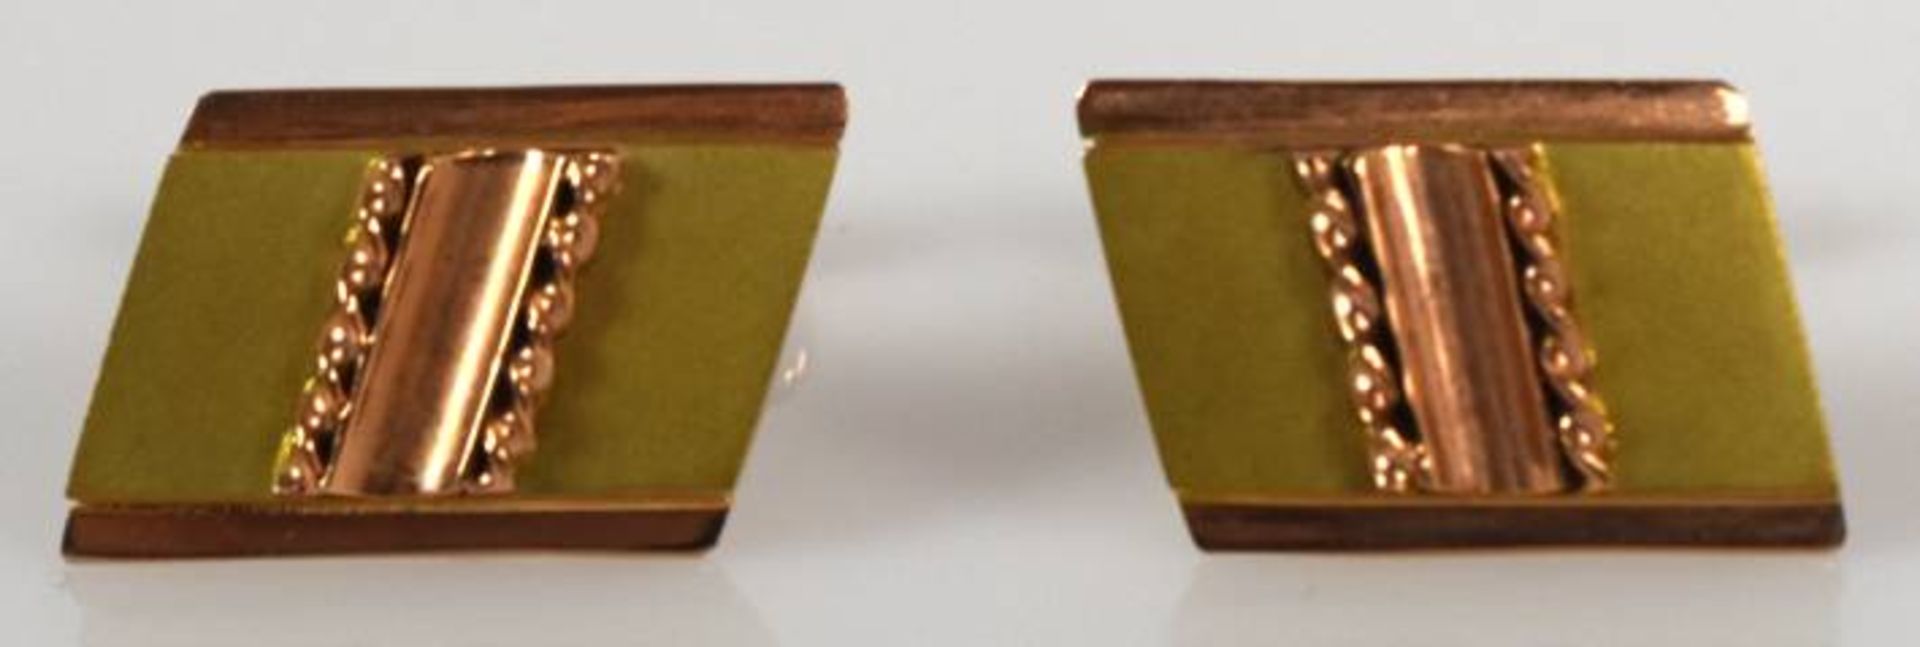 PAAR MANSCHETTENKNÖPFE Trapezform, Rot-/ Gelbgold 14ct, 7,1g, 19x13mm - Image 3 of 3